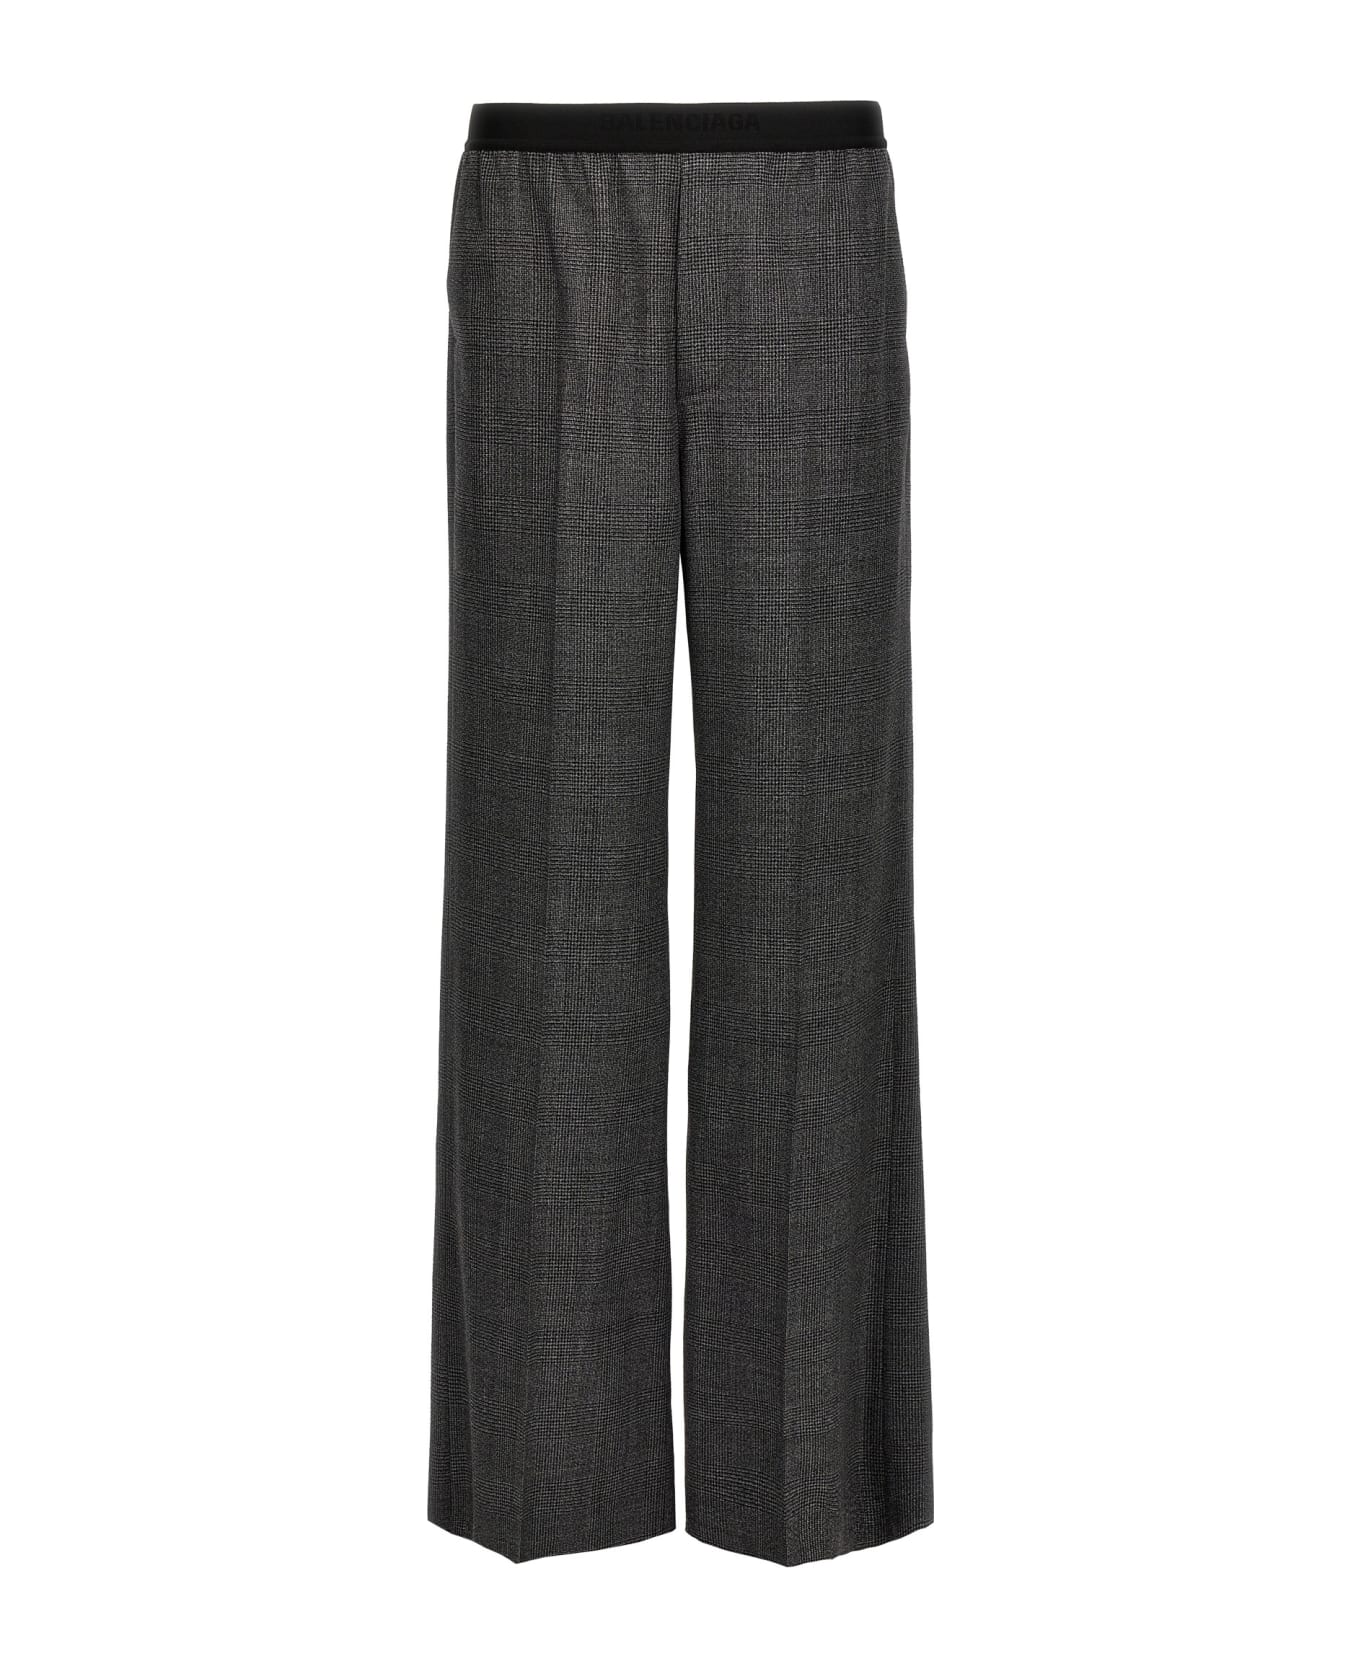 Balenciaga Check Wool Trousers - Gray ボトムス